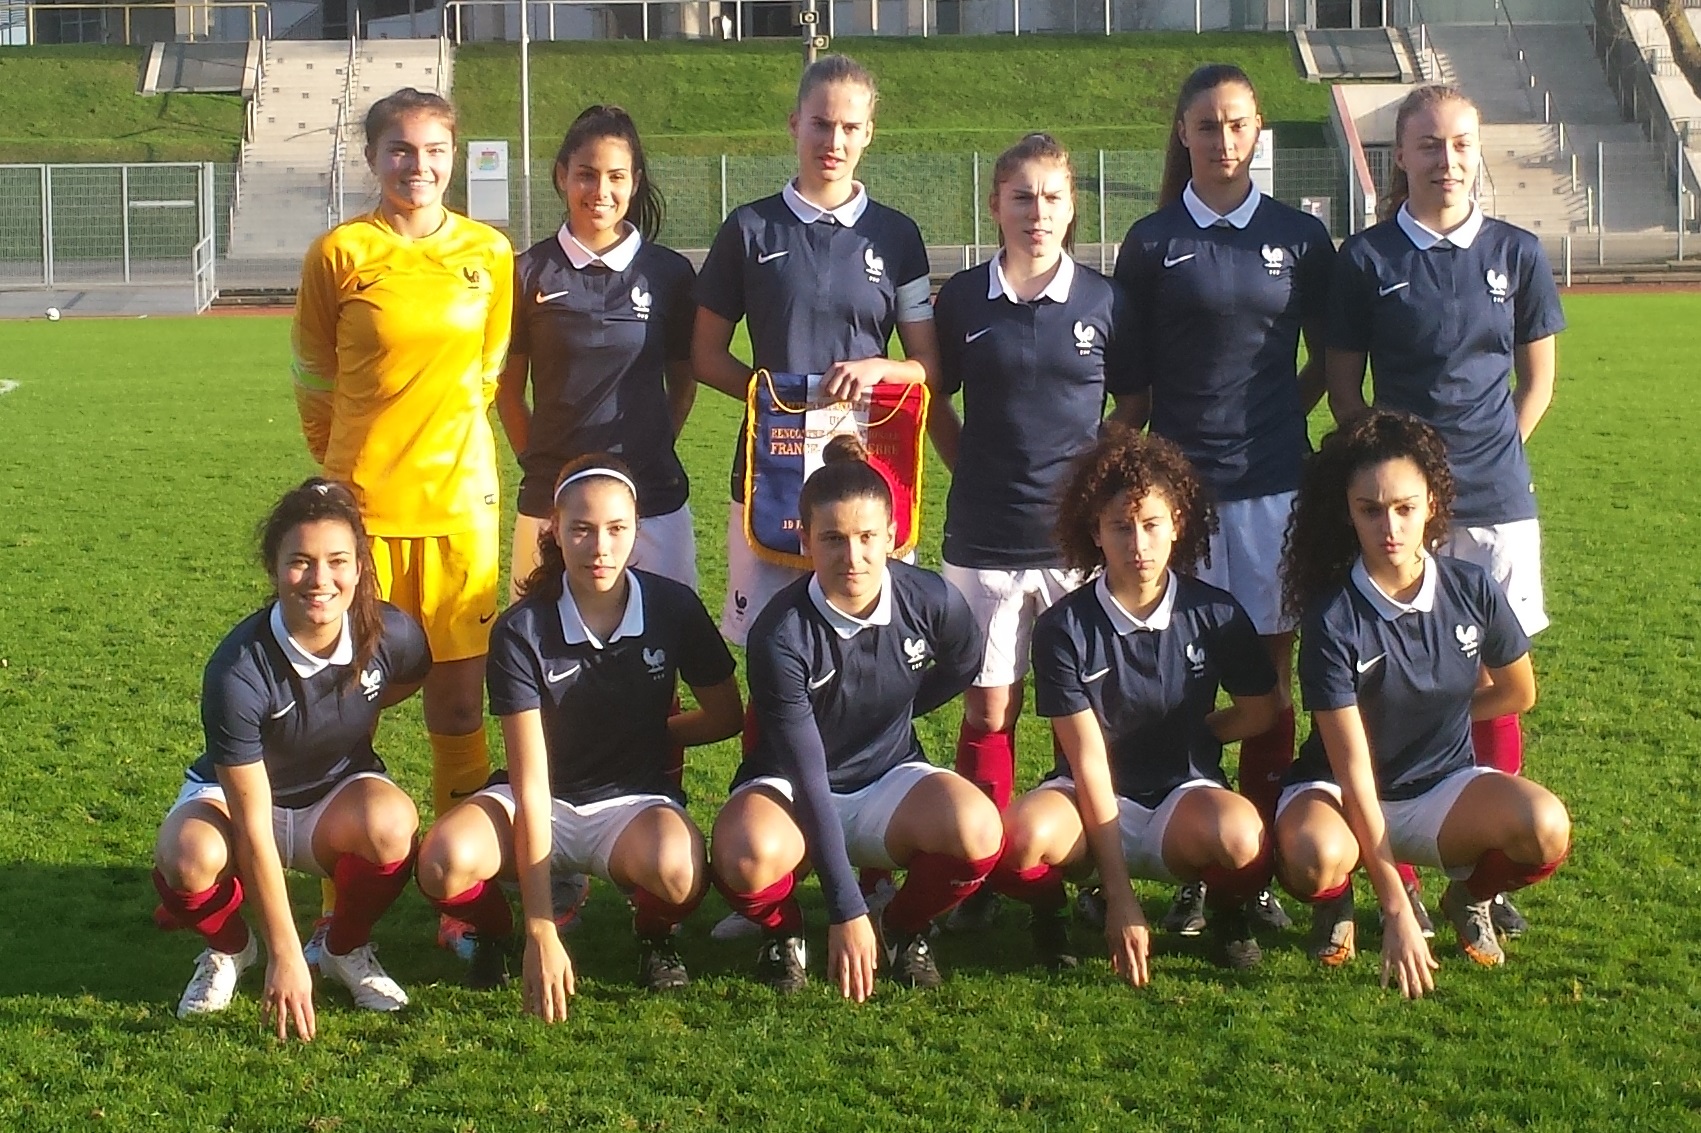 Le onze tricolore lors du dernier match joué contre l'Angleterre en décembre(photo Sylvain Jamet)